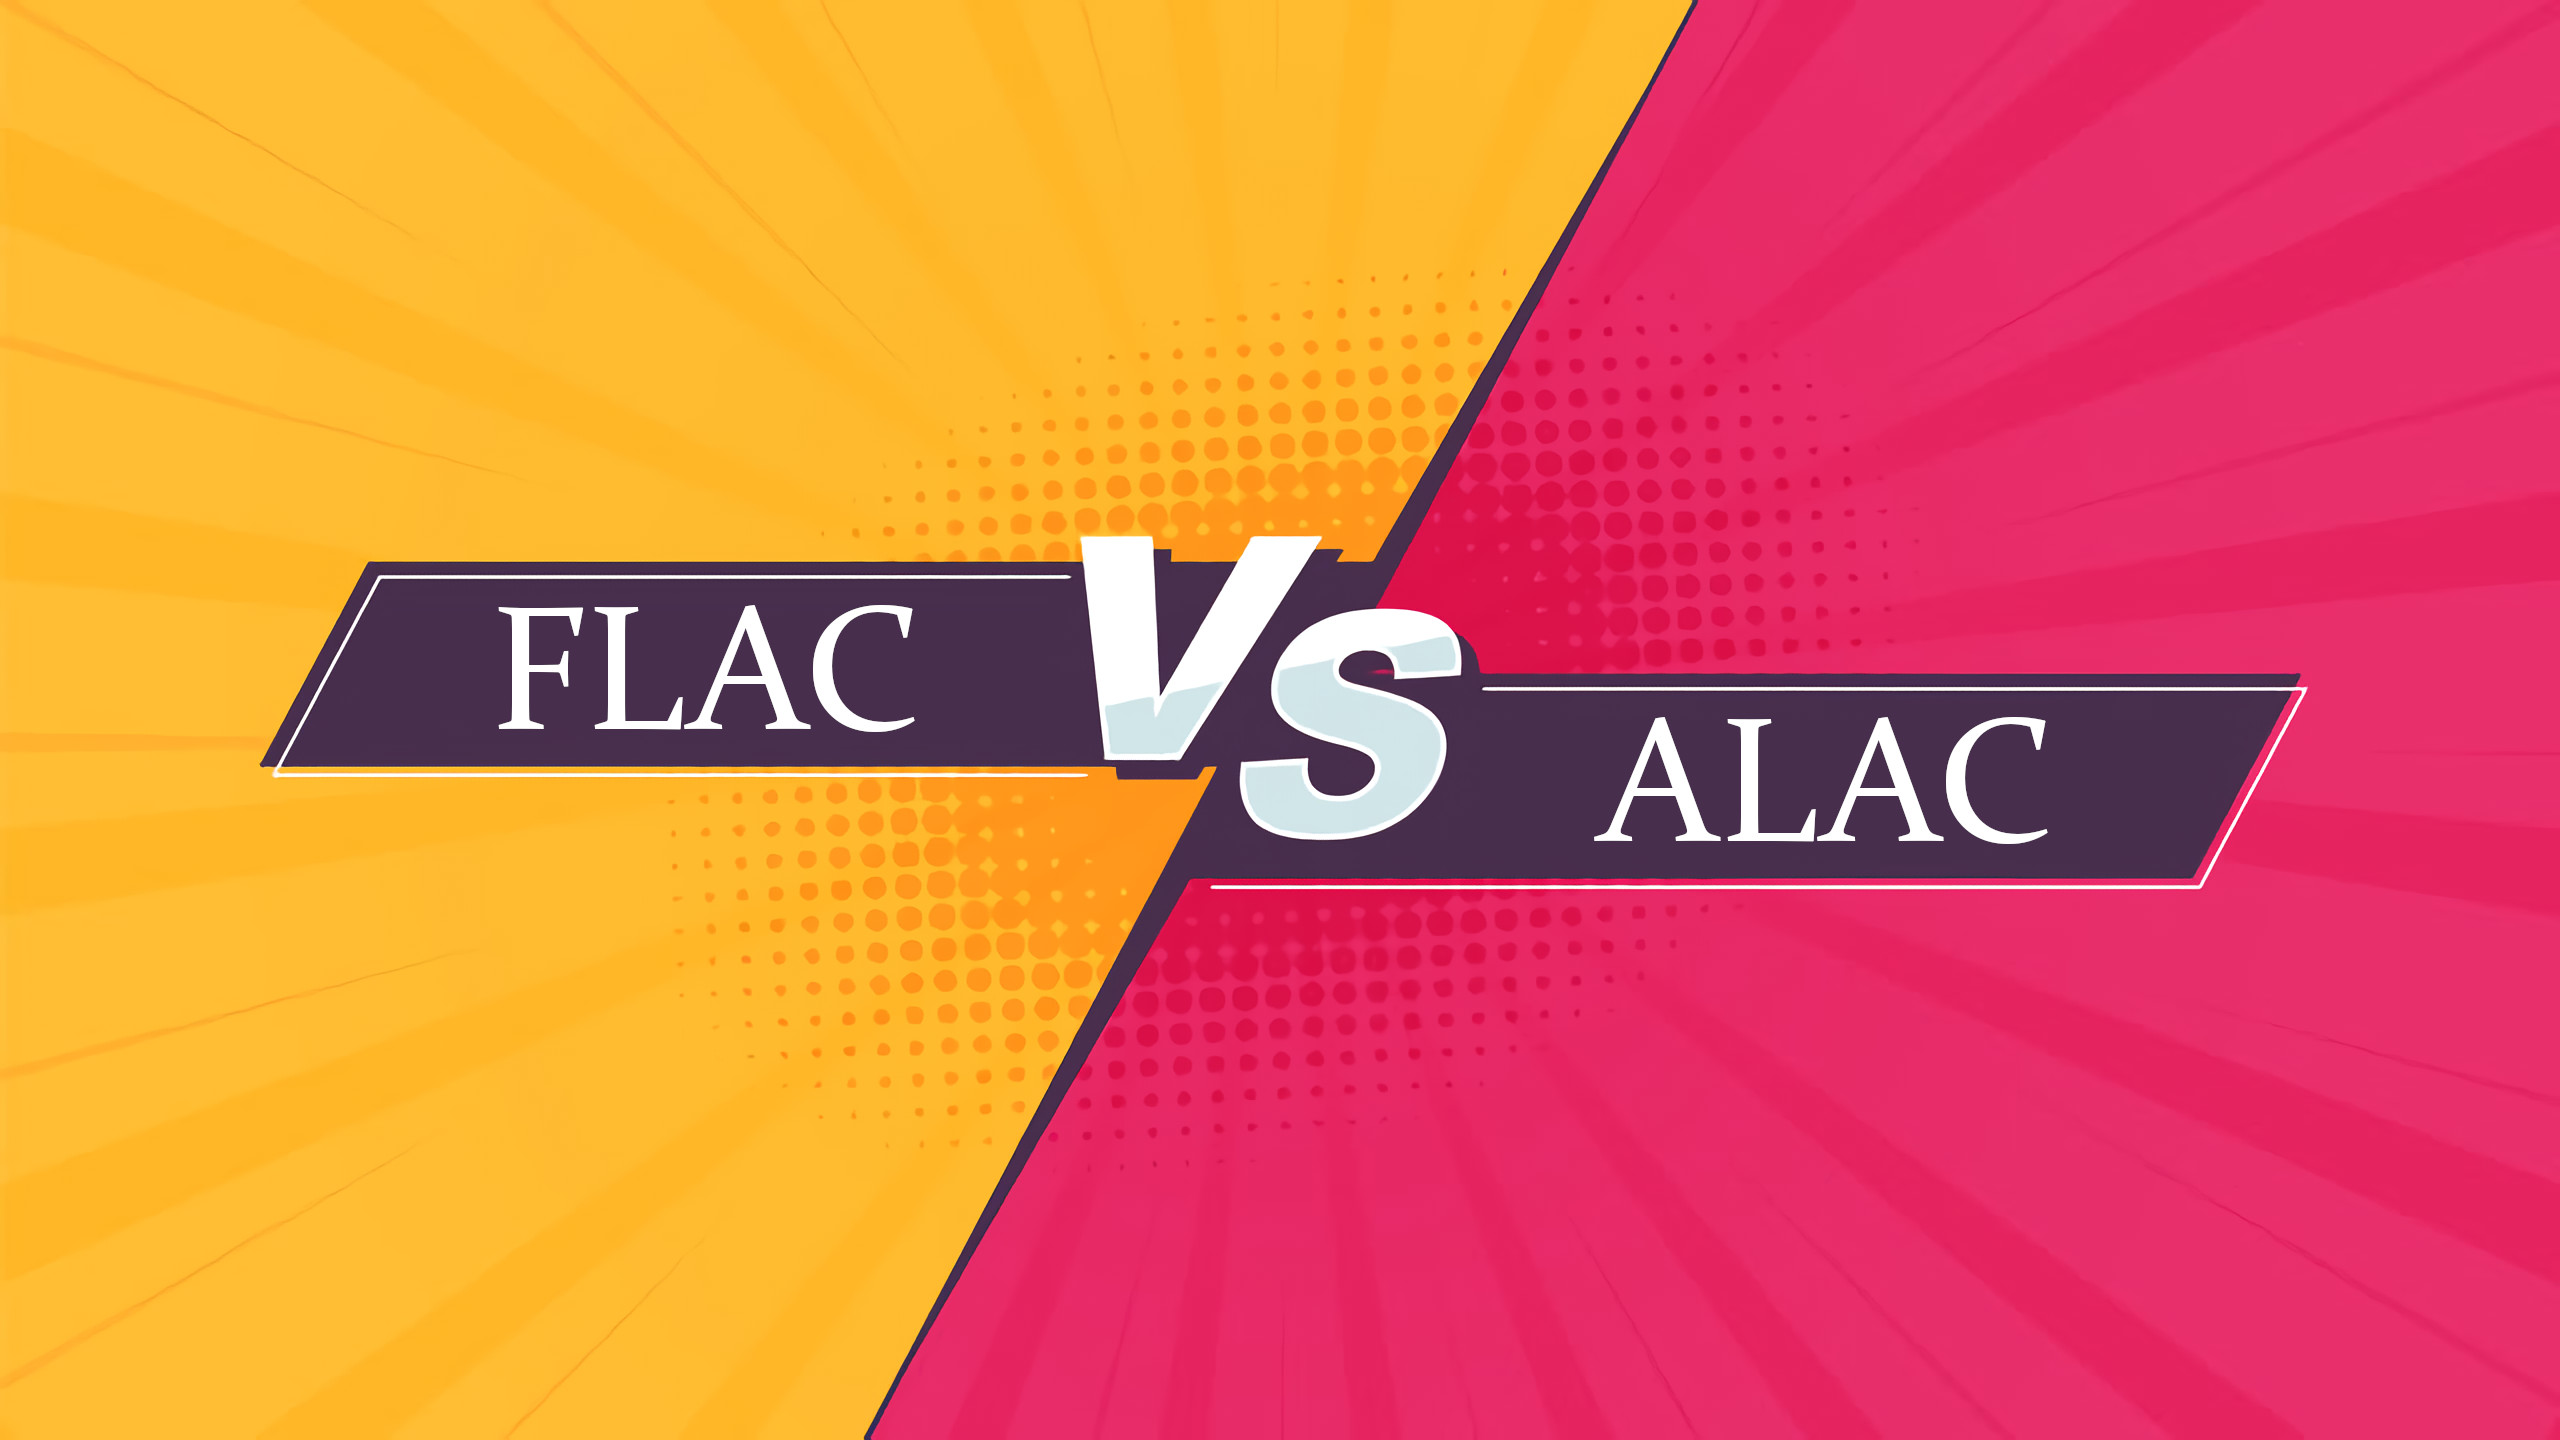 différence entre flac et alac, flac vs alac, comparaison flac et alac